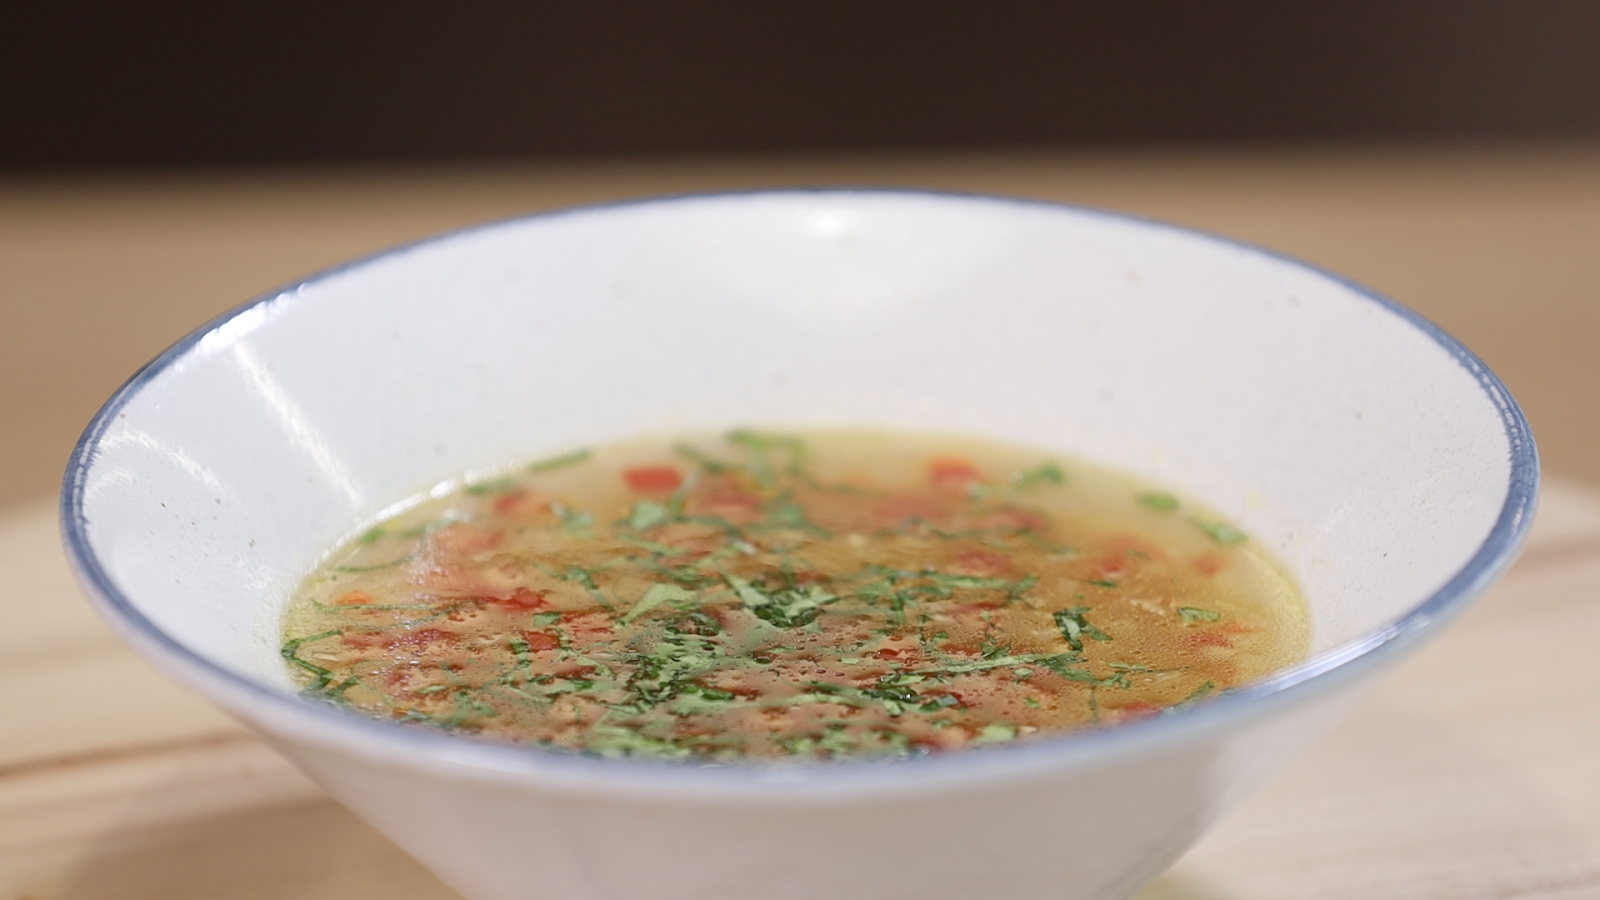 Суп из чечевицы красной с курицей и картошкой рецепт фото пошагово